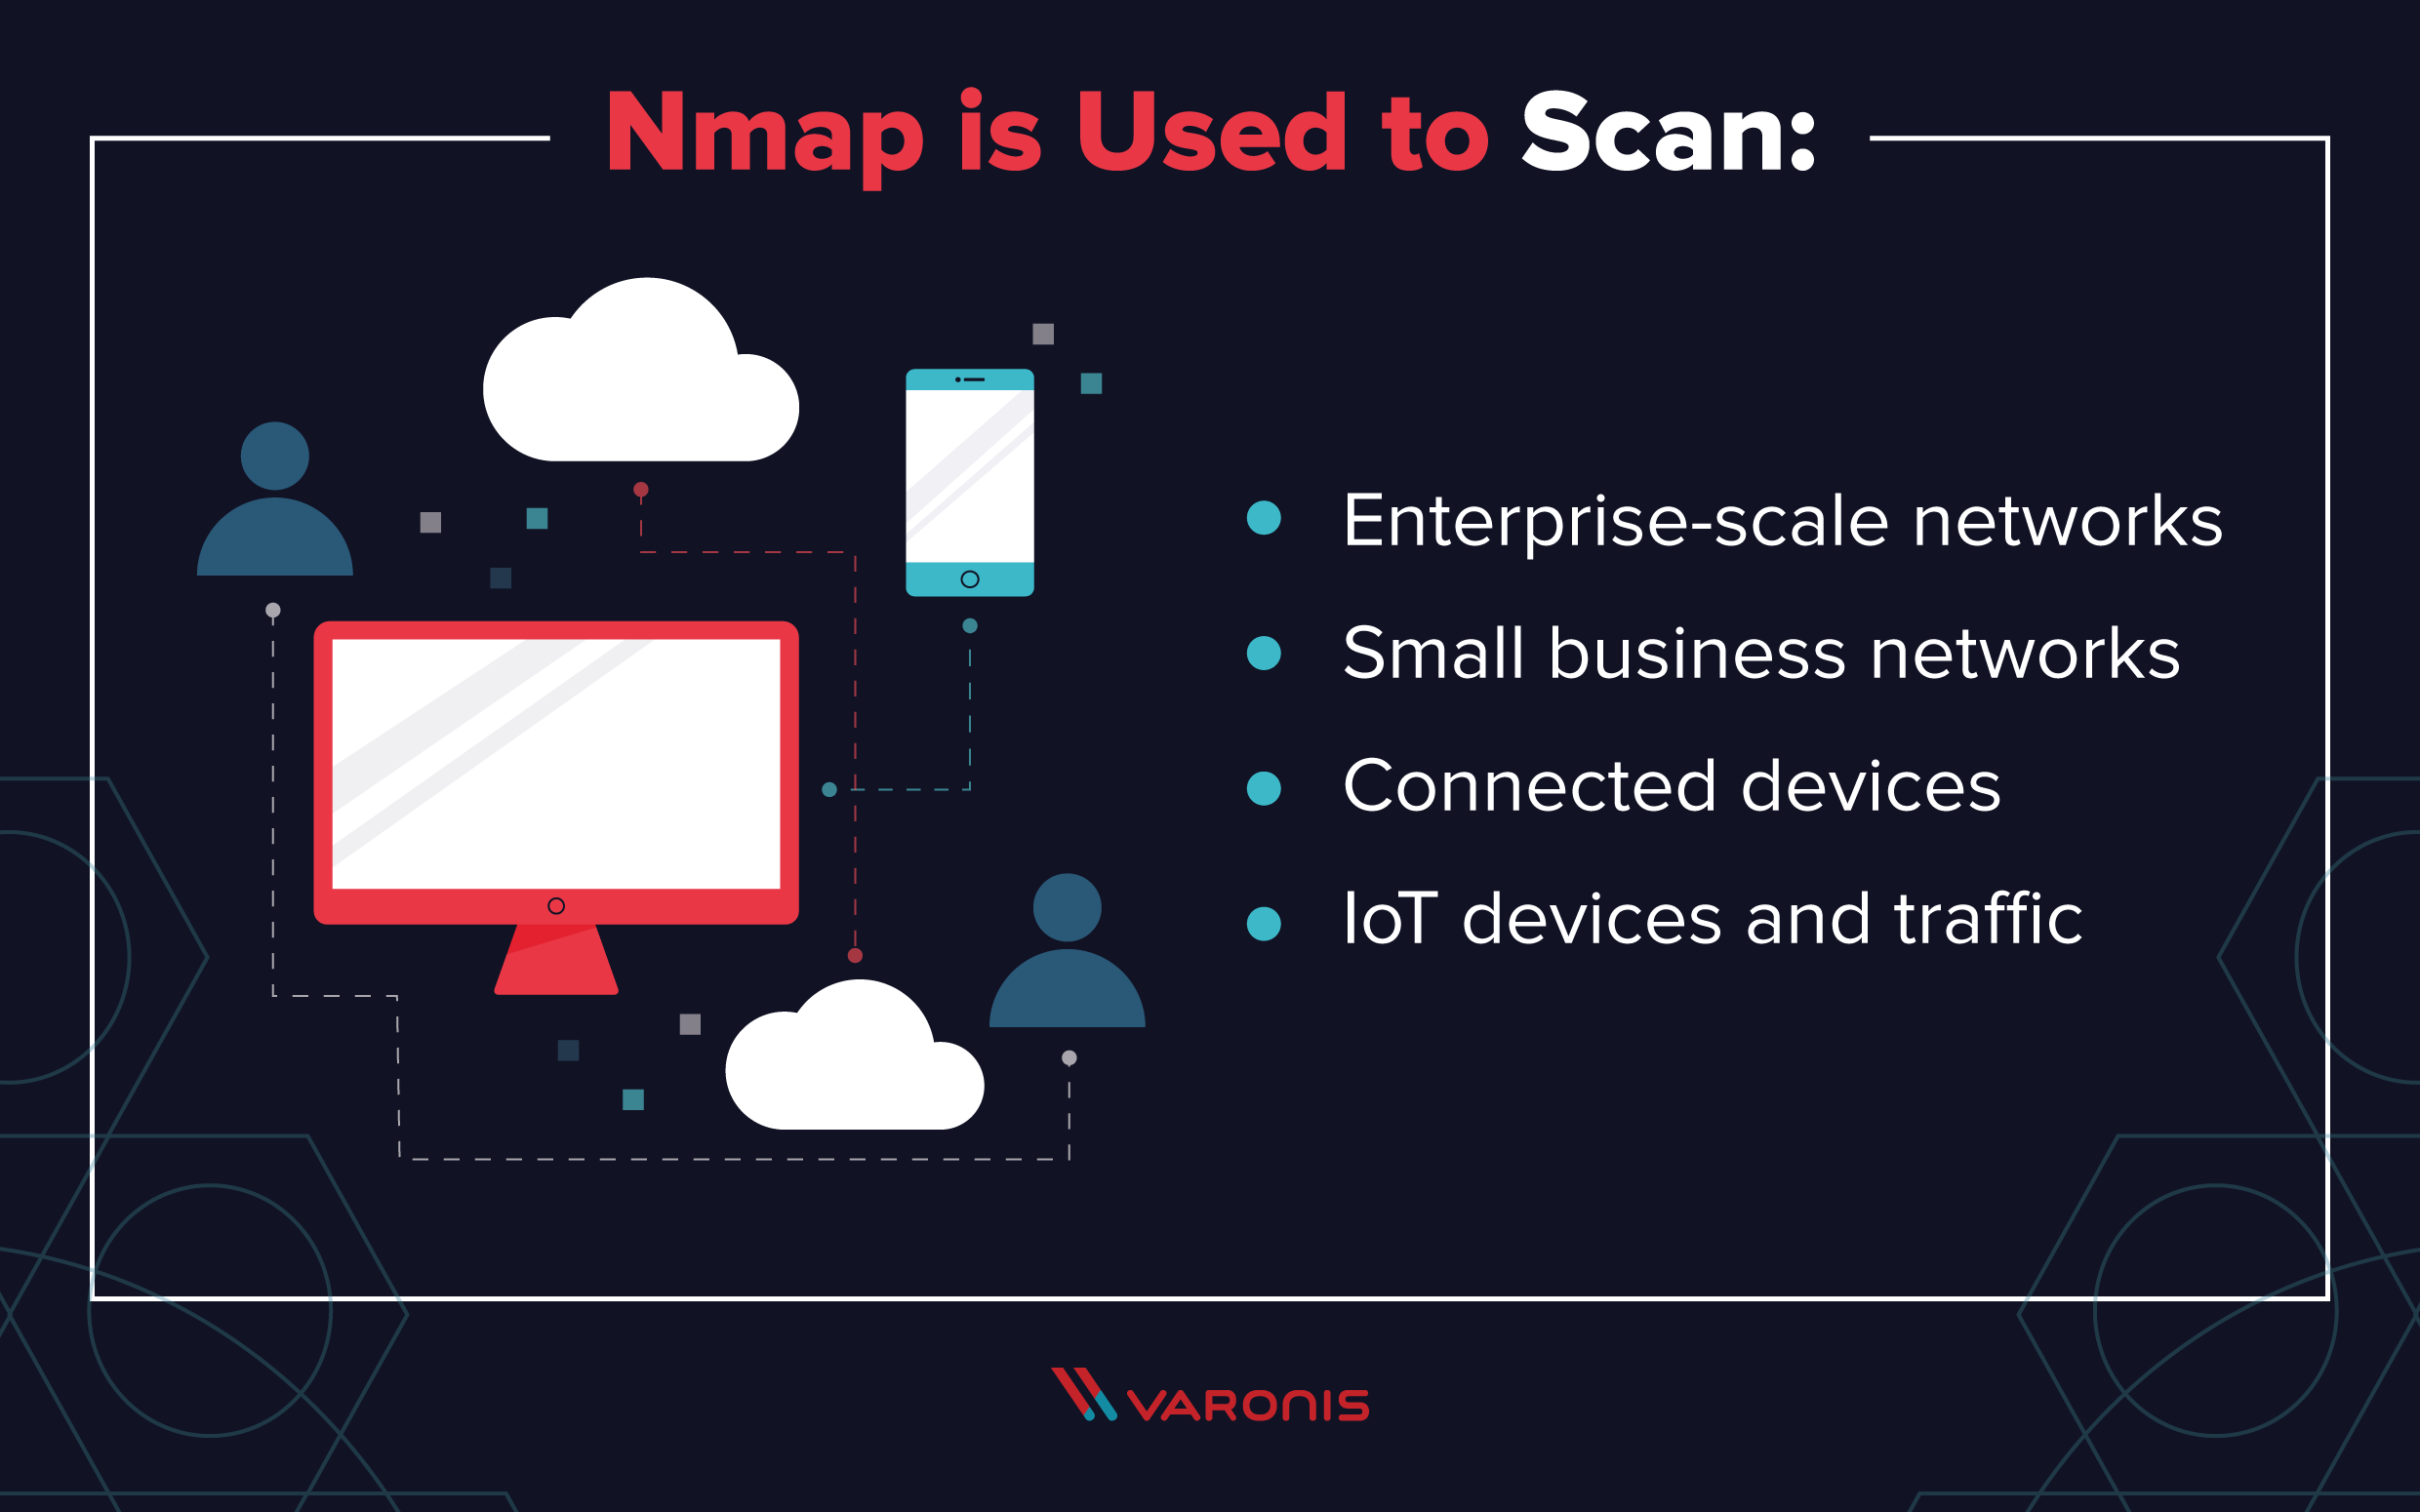 Utilisations de Nmap, y compris les réseaux, les appareils IoT et les autres appareils